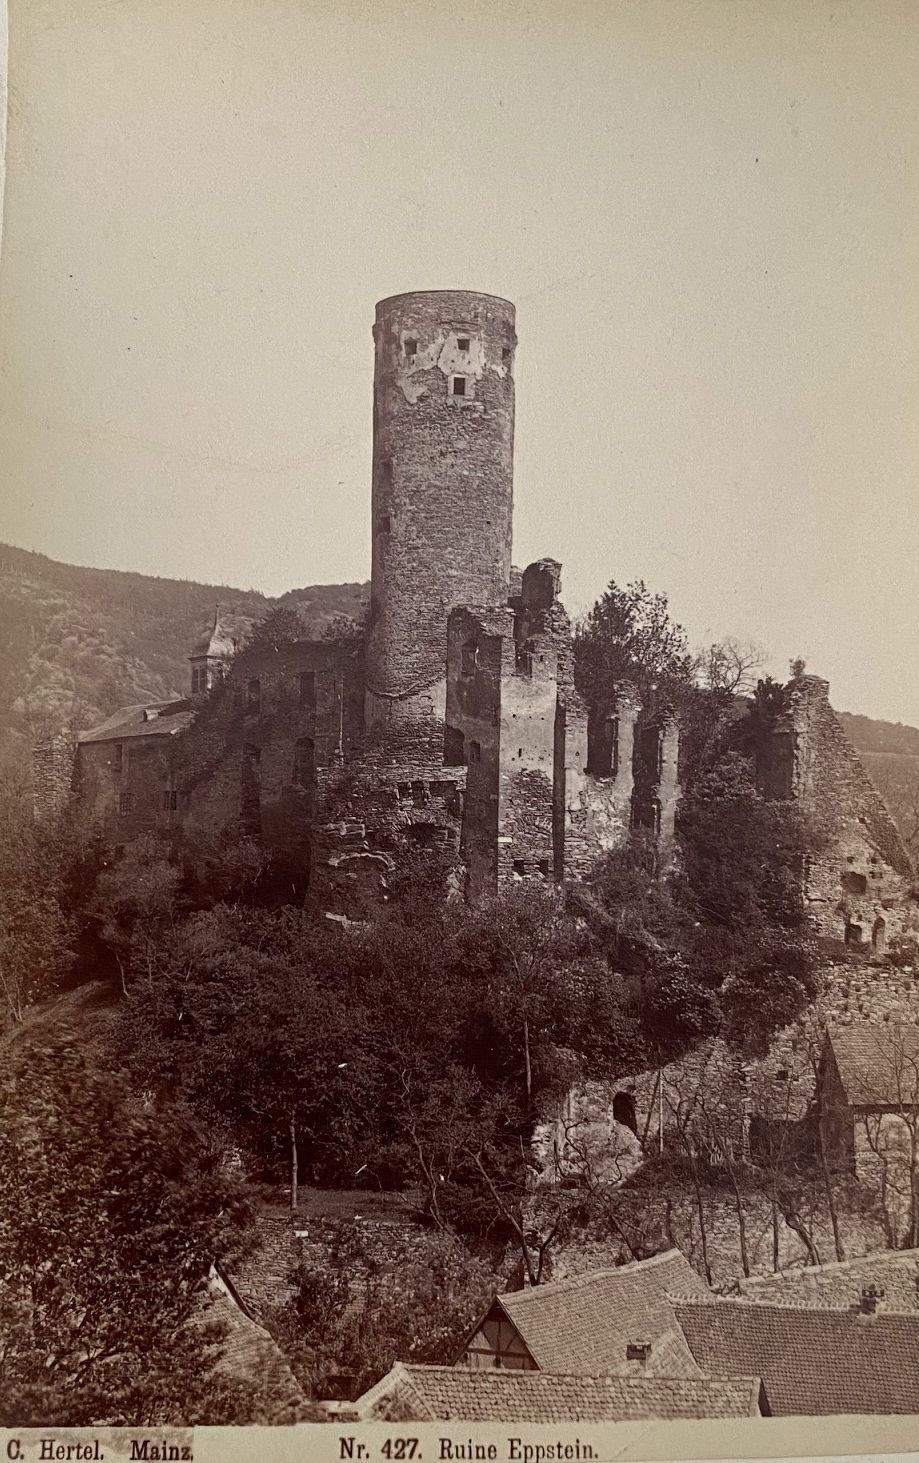 Fotografie, Carl Hertel No. 427, Ruine Eppstein, ca. 1885 (Taunus-Rhein-Main - Regionalgeschichtliche Sammlung Dr. Stefan Naas CC BY-NC-SA)